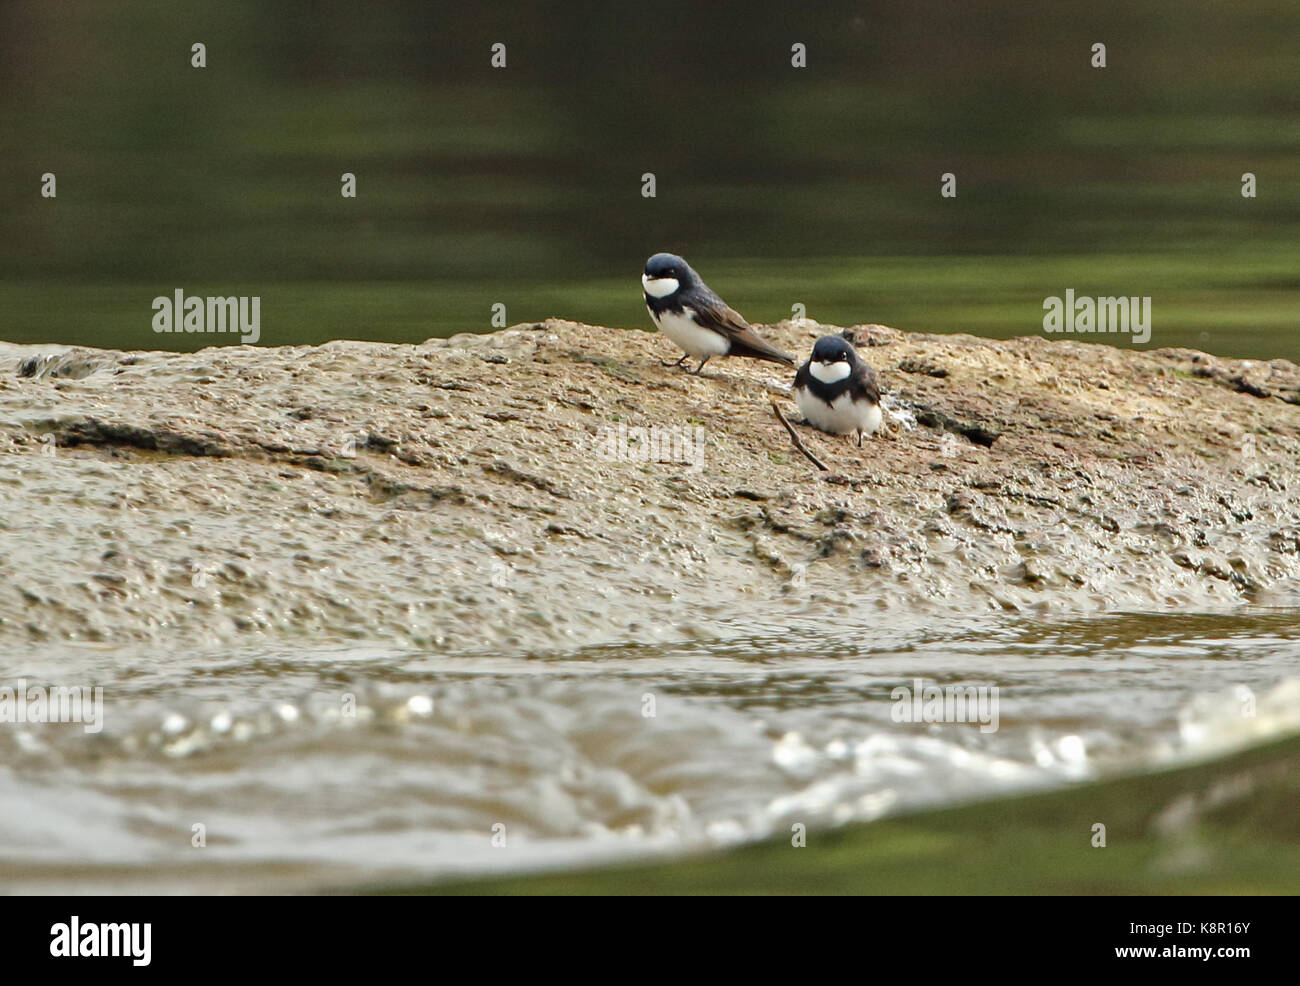 Black-pêcheur d'Europe (atticora melanoleuca) deux adultes sur mudbank dans la rivière La rivière guaviare, inirida, Colombie novembre Banque D'Images